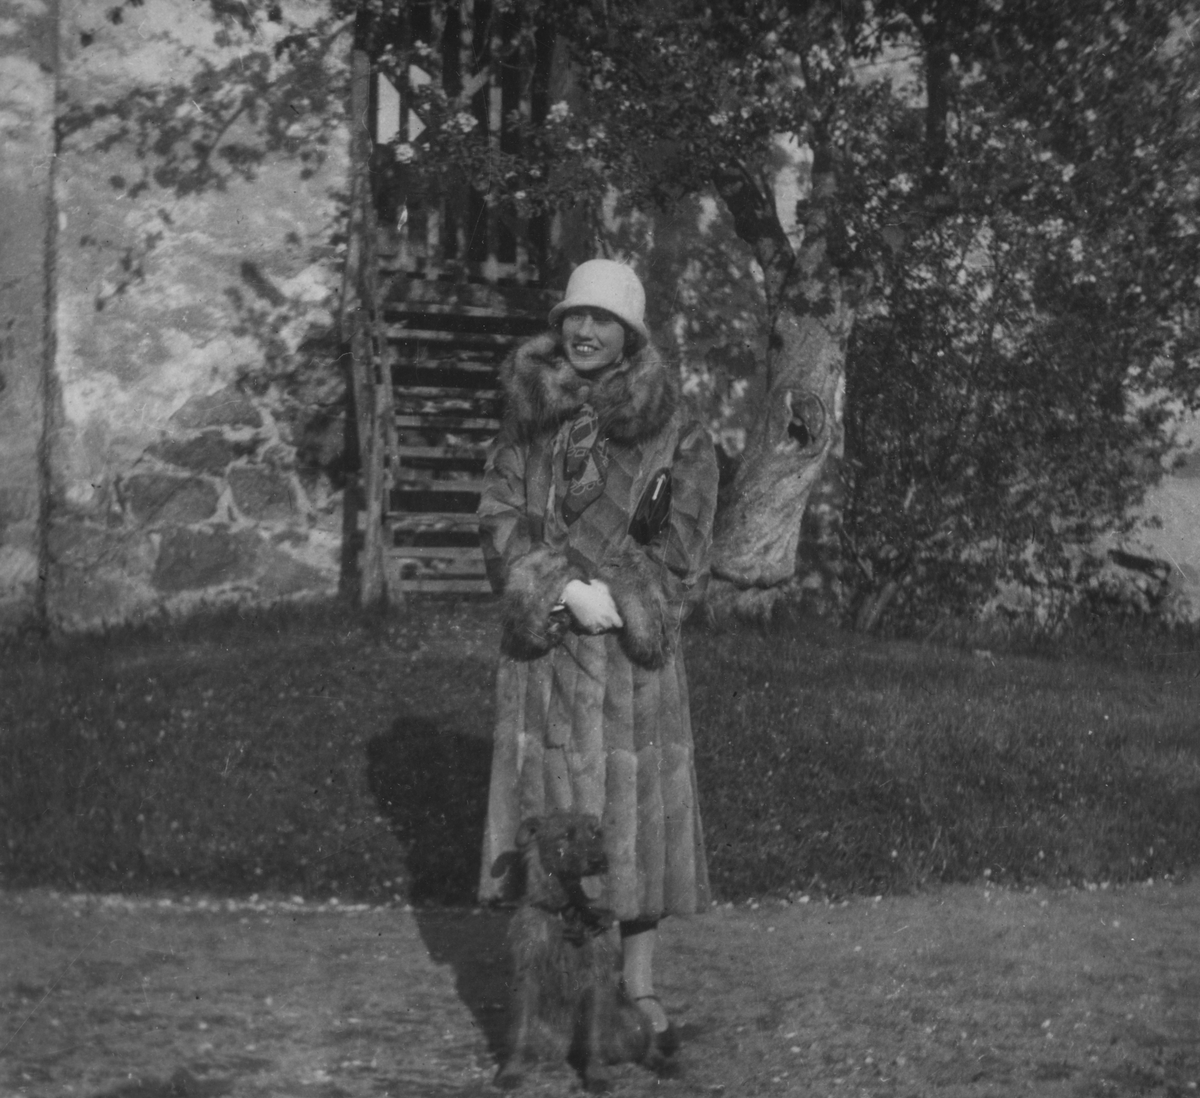 Porträttfoto av Anna Linderstam iklädd rock och hatt med en hund framför en byggnad i Stjärnorp, 1925.

Text vid foto: "Med Fiat 501 på strövtåg i vida världen. 1925. Flickan vid Stjernorp. BK."